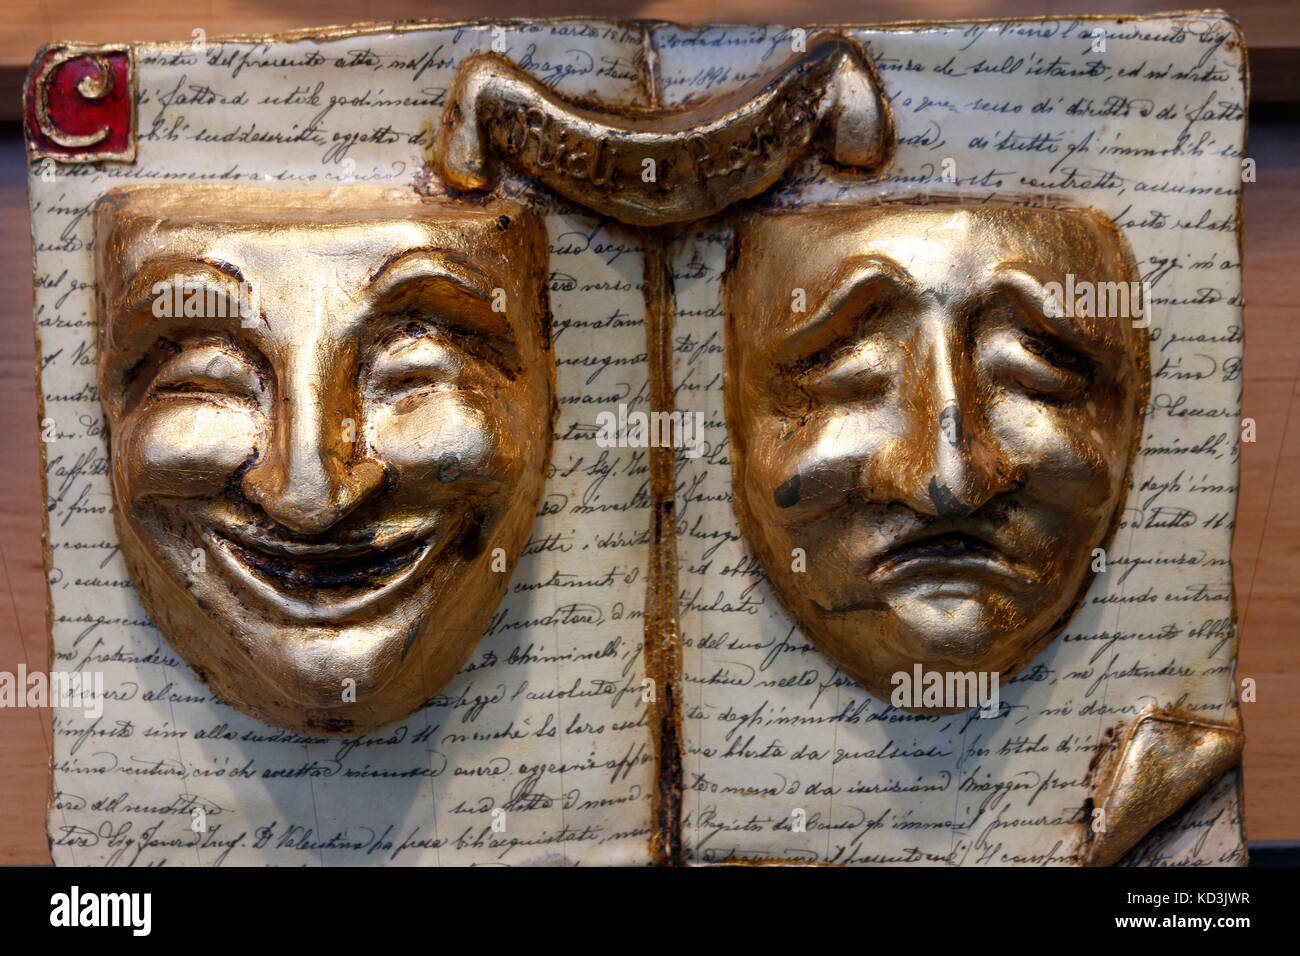 Masken mit unterschiedlicher Stimmung: heiter und ernst, Berlin-Chalottenburg. Stock Photo